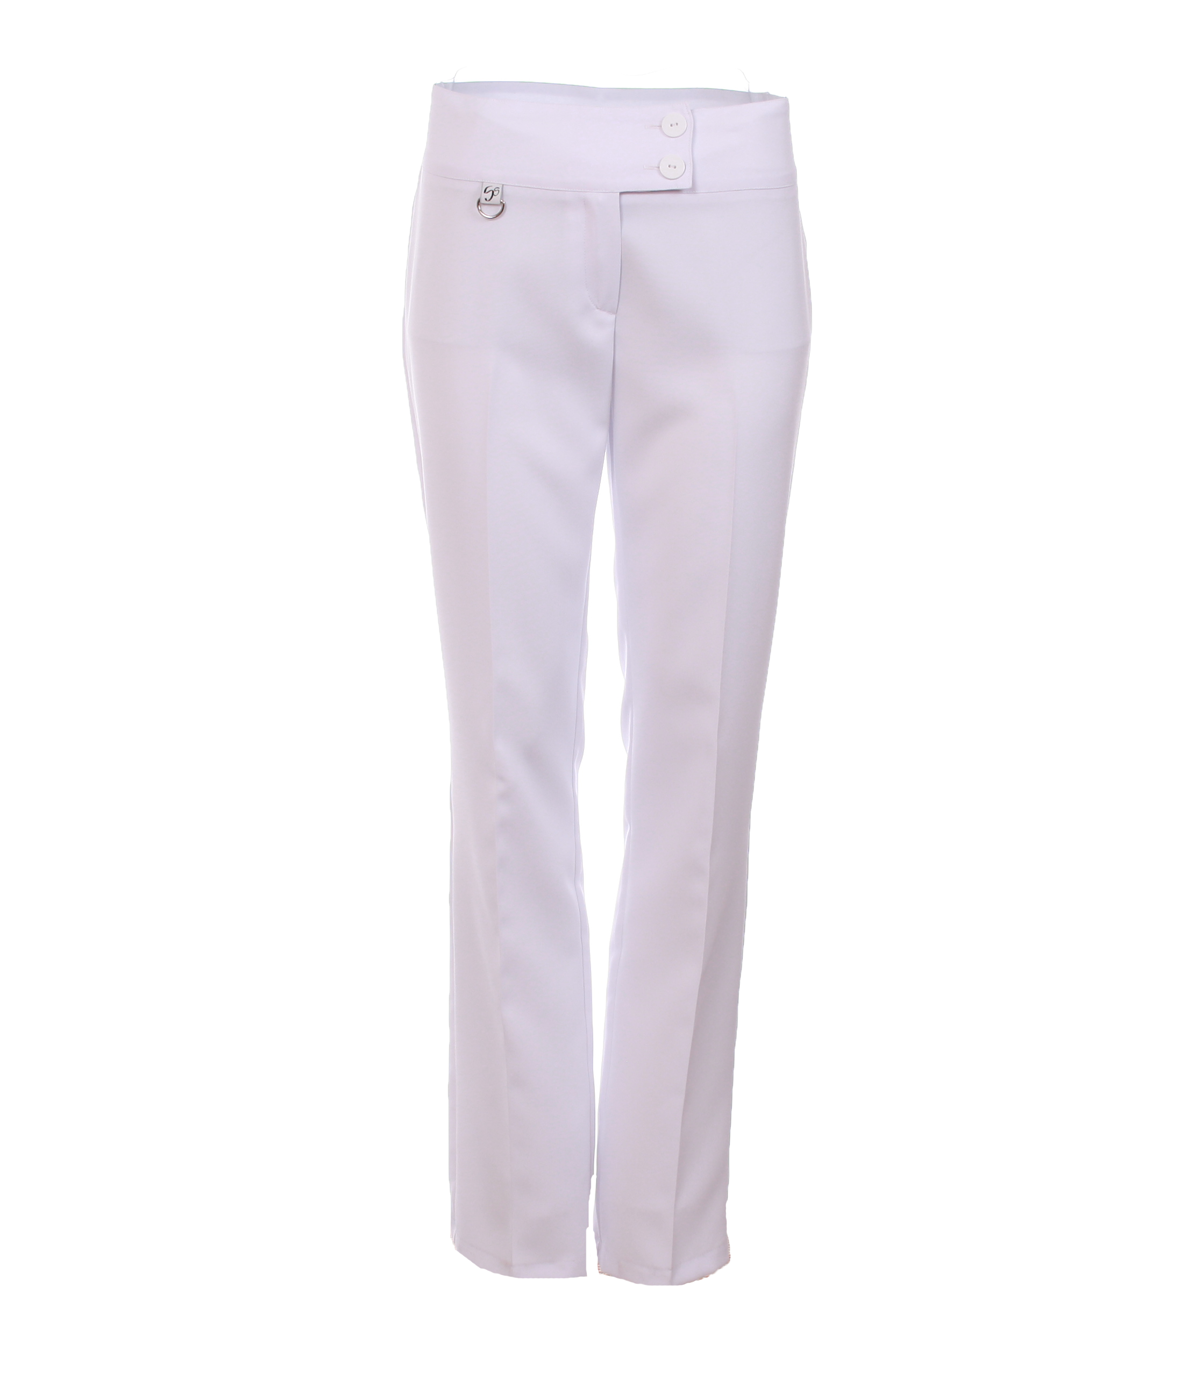 Pantalon de travail droit pour femme Les Secrets du Style #2771 blanc